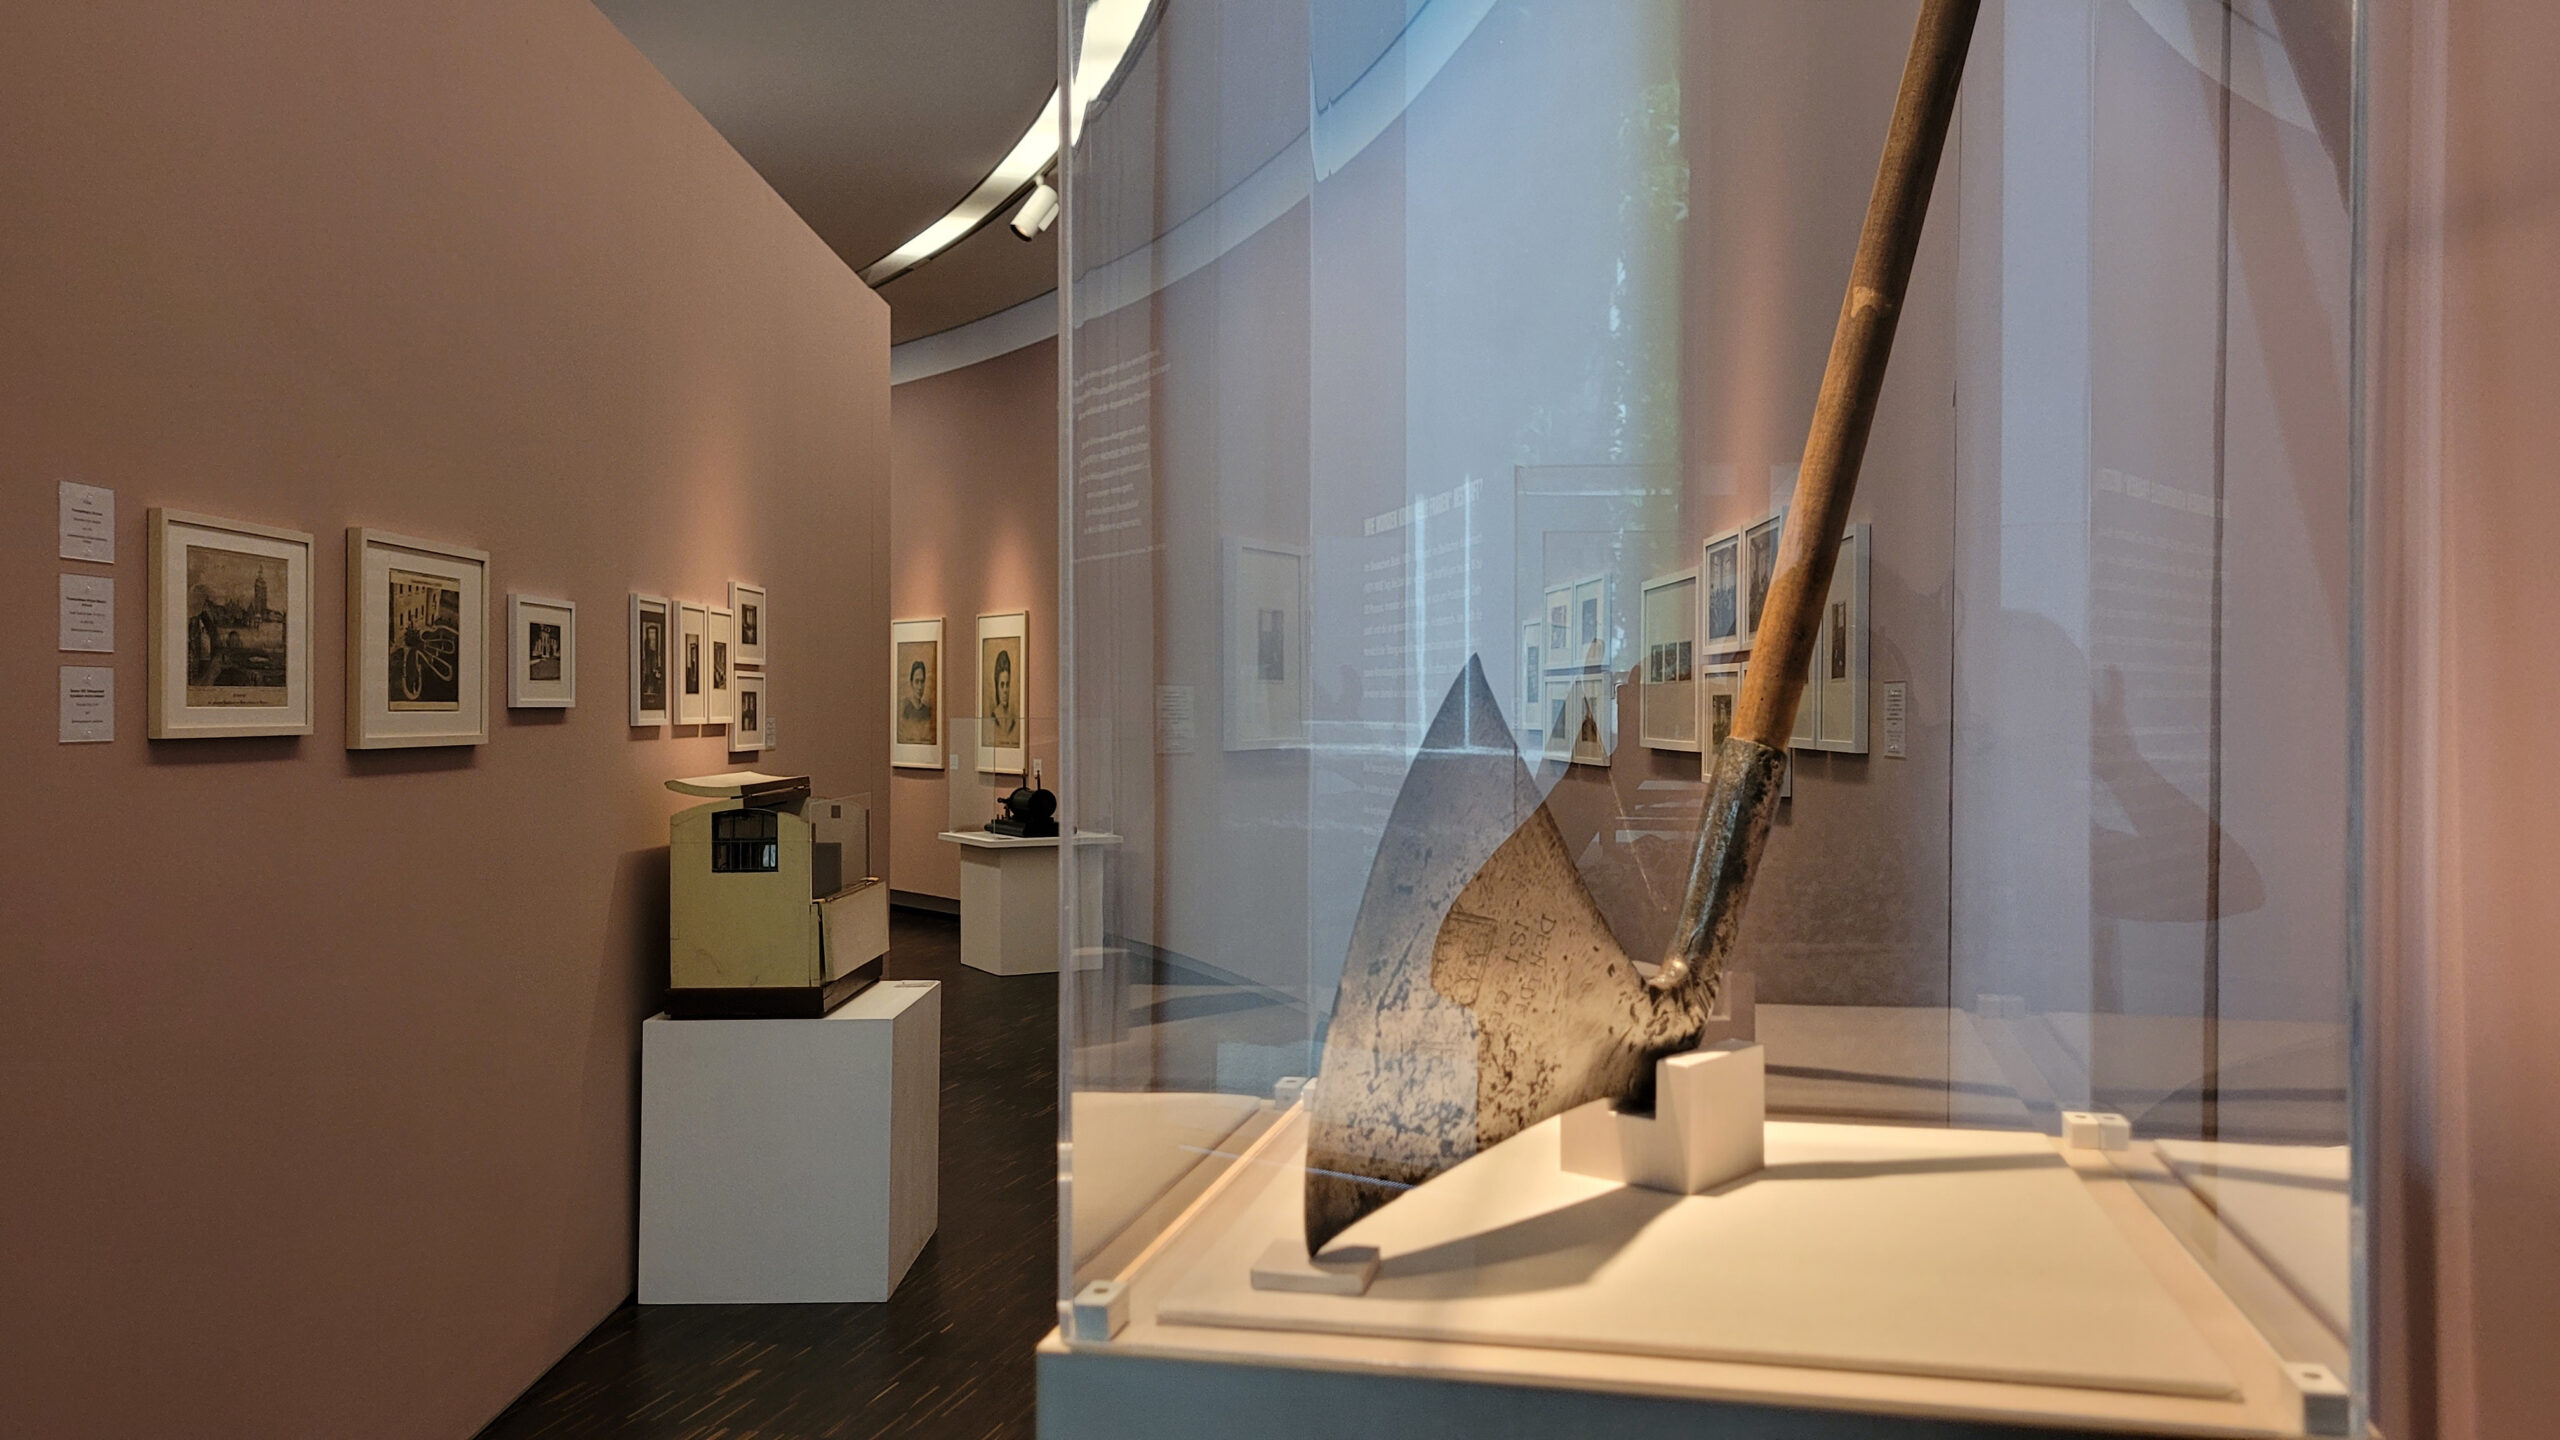 Blick in einen Flur der Ausstellung mit Objekte aus dem Strafvollzugsmuseum